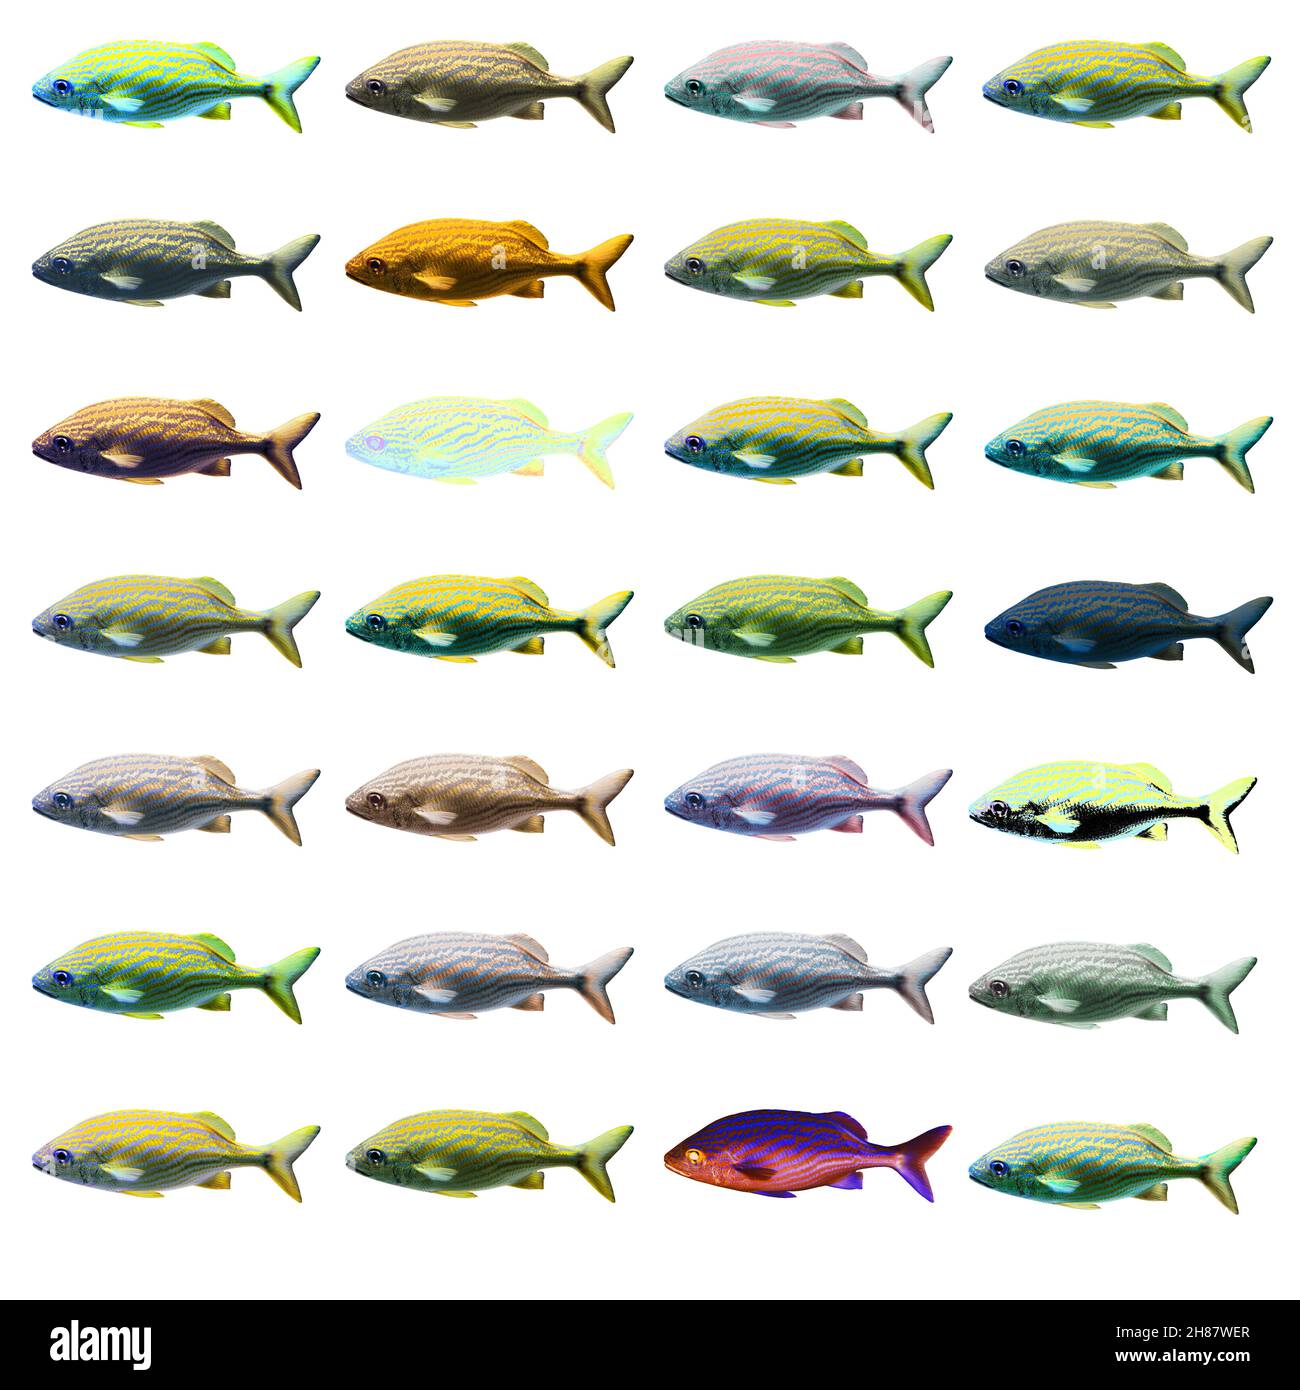 Migliorate digitalmente immagine di 28 variazioni di colore di un pesce di mare Foto Stock